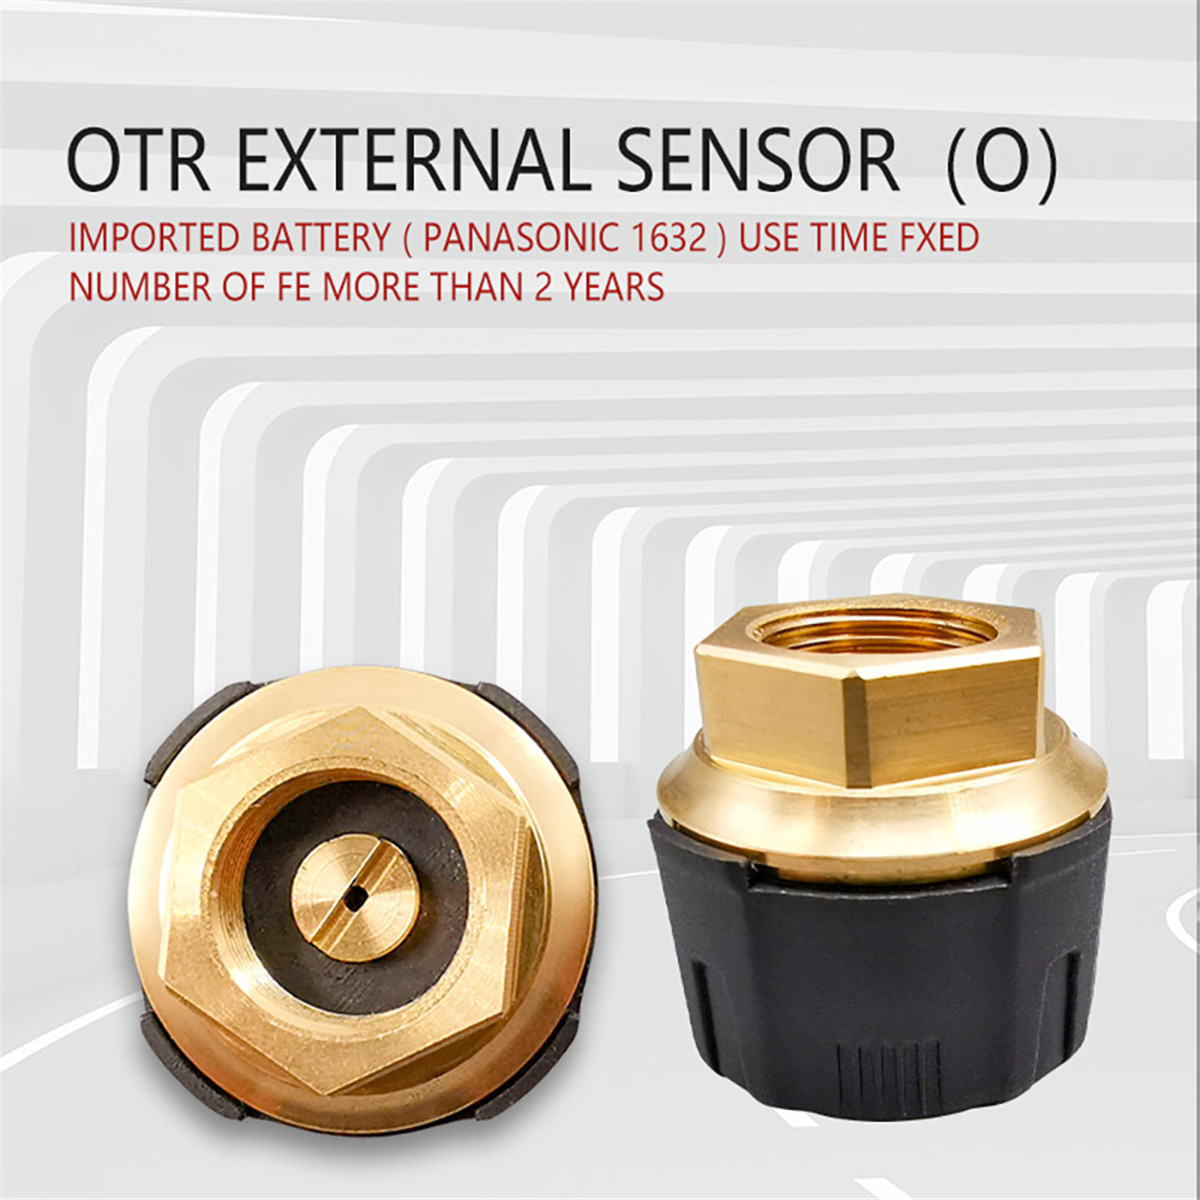 OTR EXTERNAL Sensor01 (8)